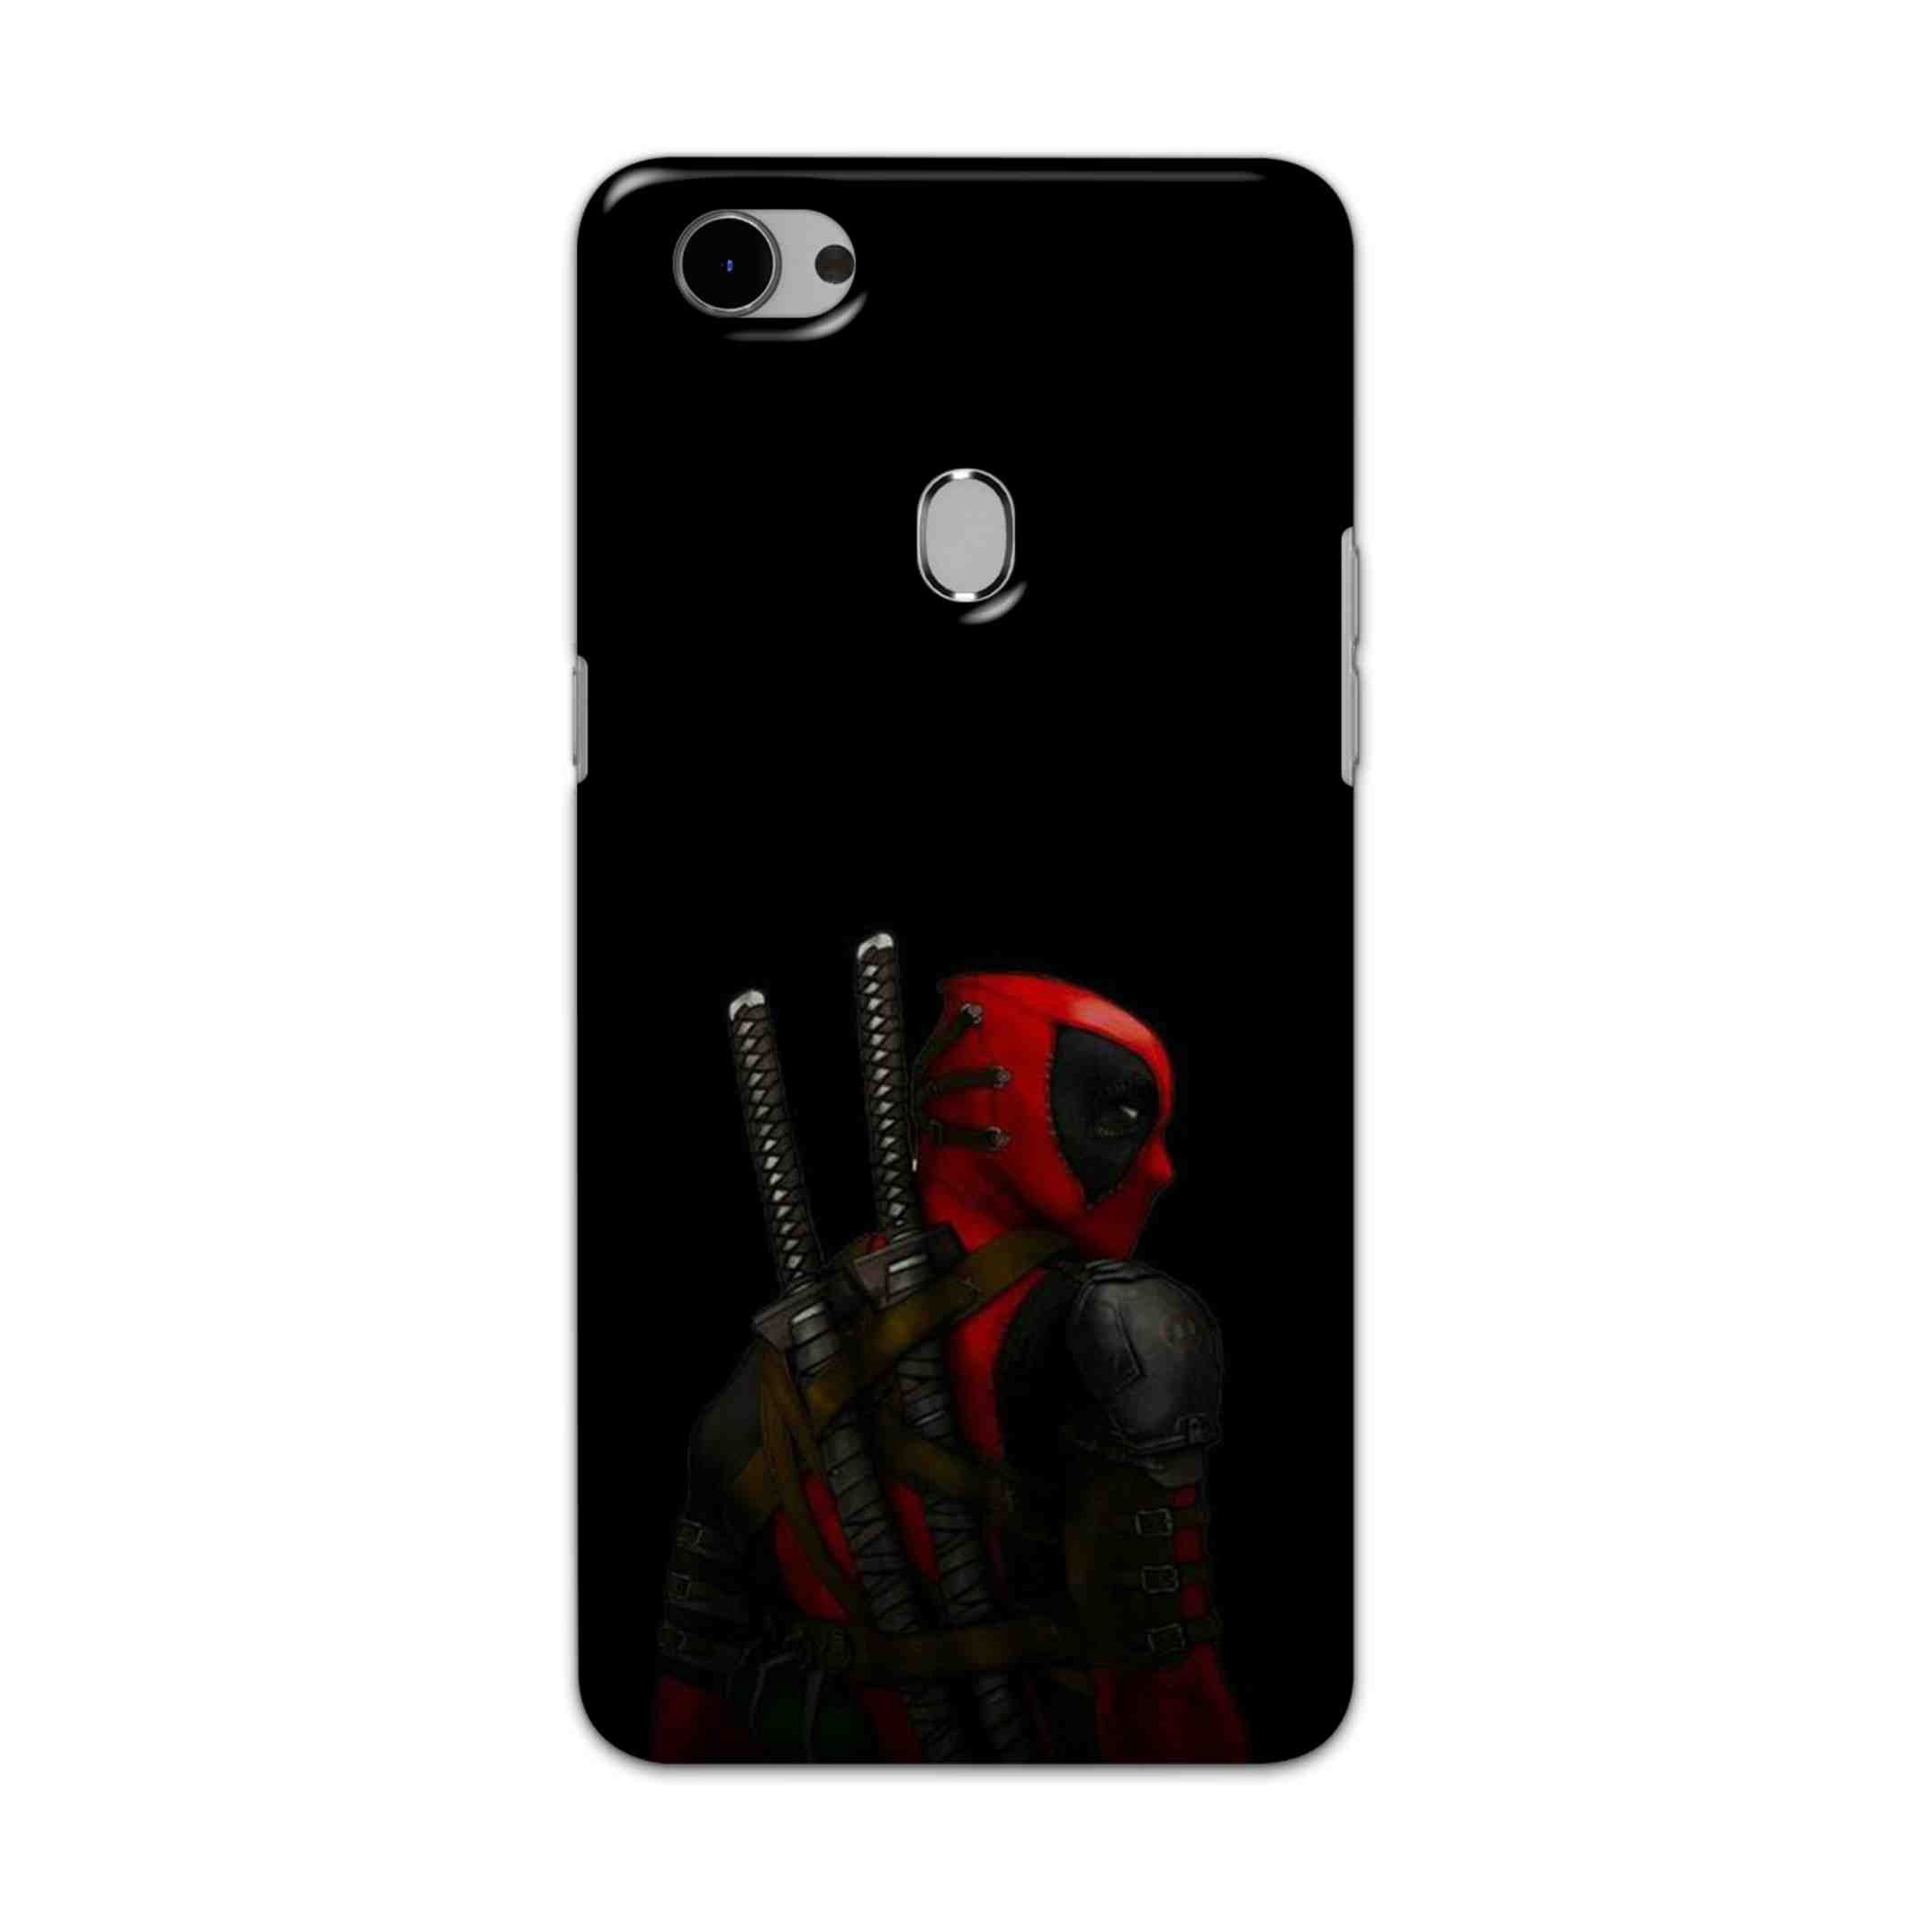 Buy Deadpool Hard Back Mobile Phone Case Cover For Oppo F7 Online